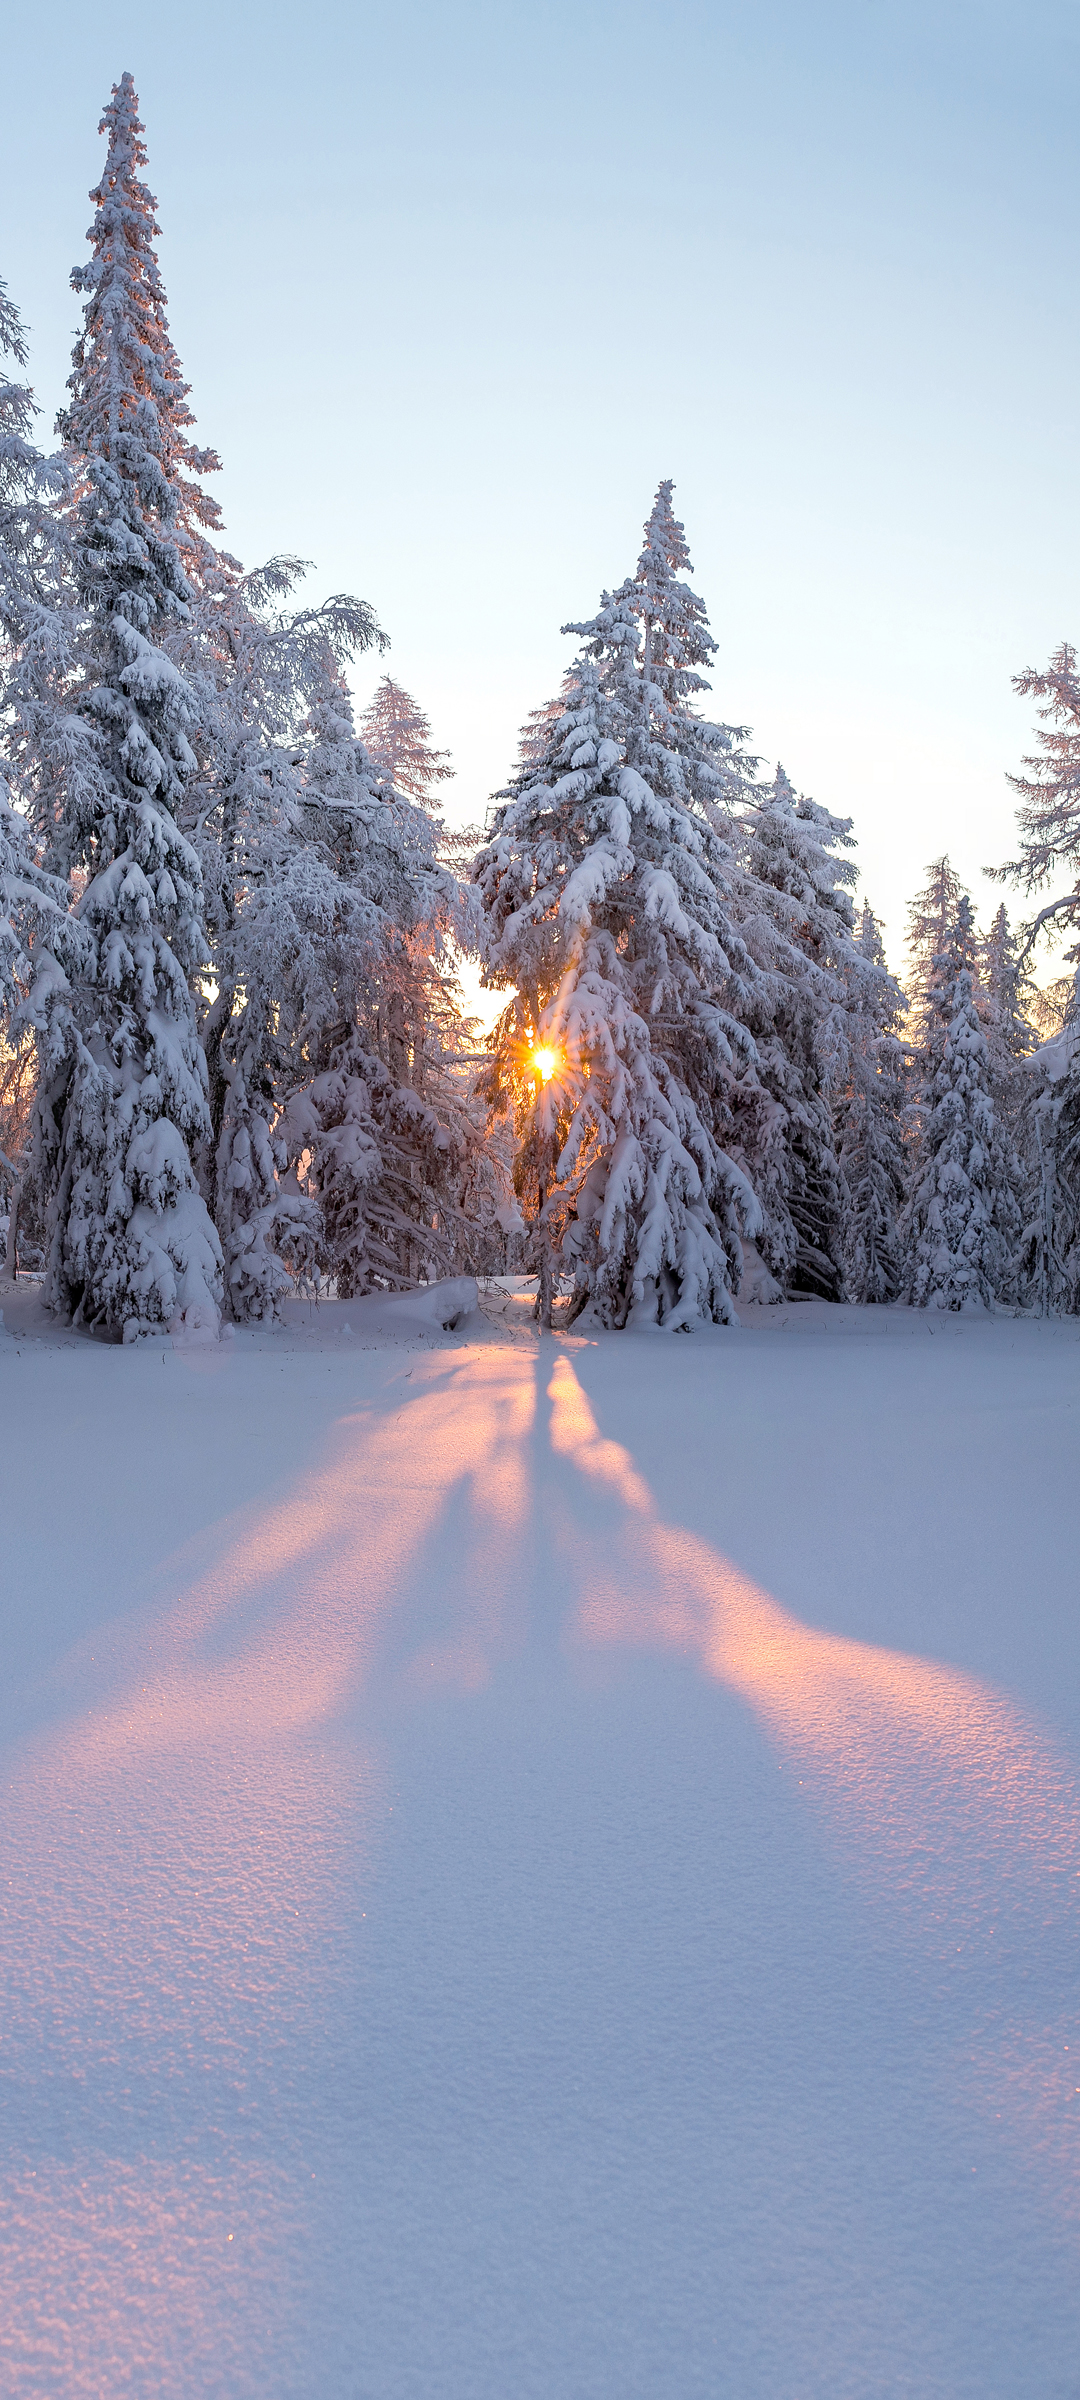 阳光照射,雪地雪山图片-千叶网